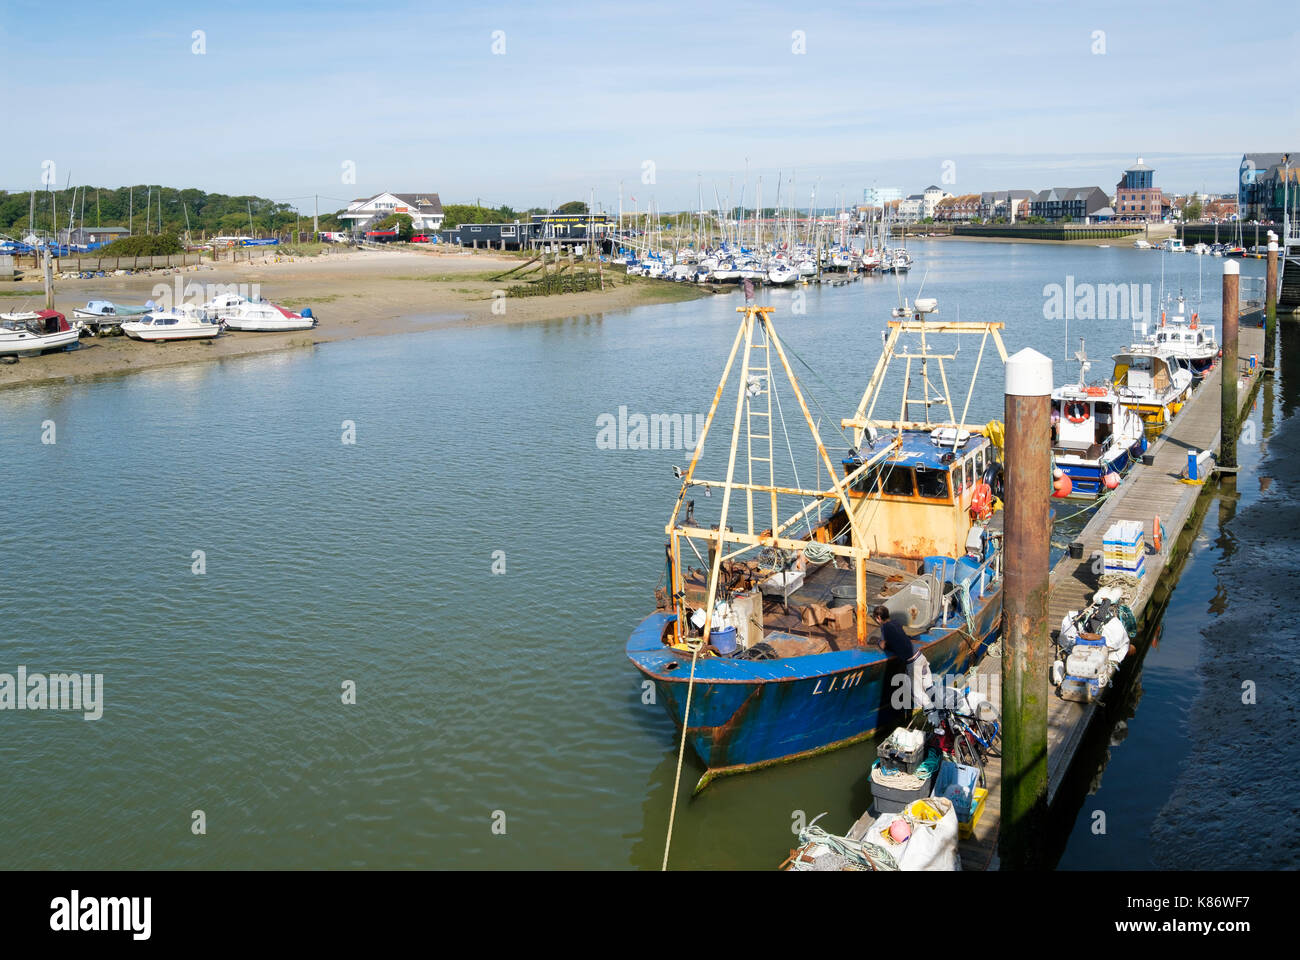 Günstig angeln Boot und Motor Kreuzer auf dem Fluss Arun, Littlehampton, West Sussex, England, Großbritannien Stockfoto